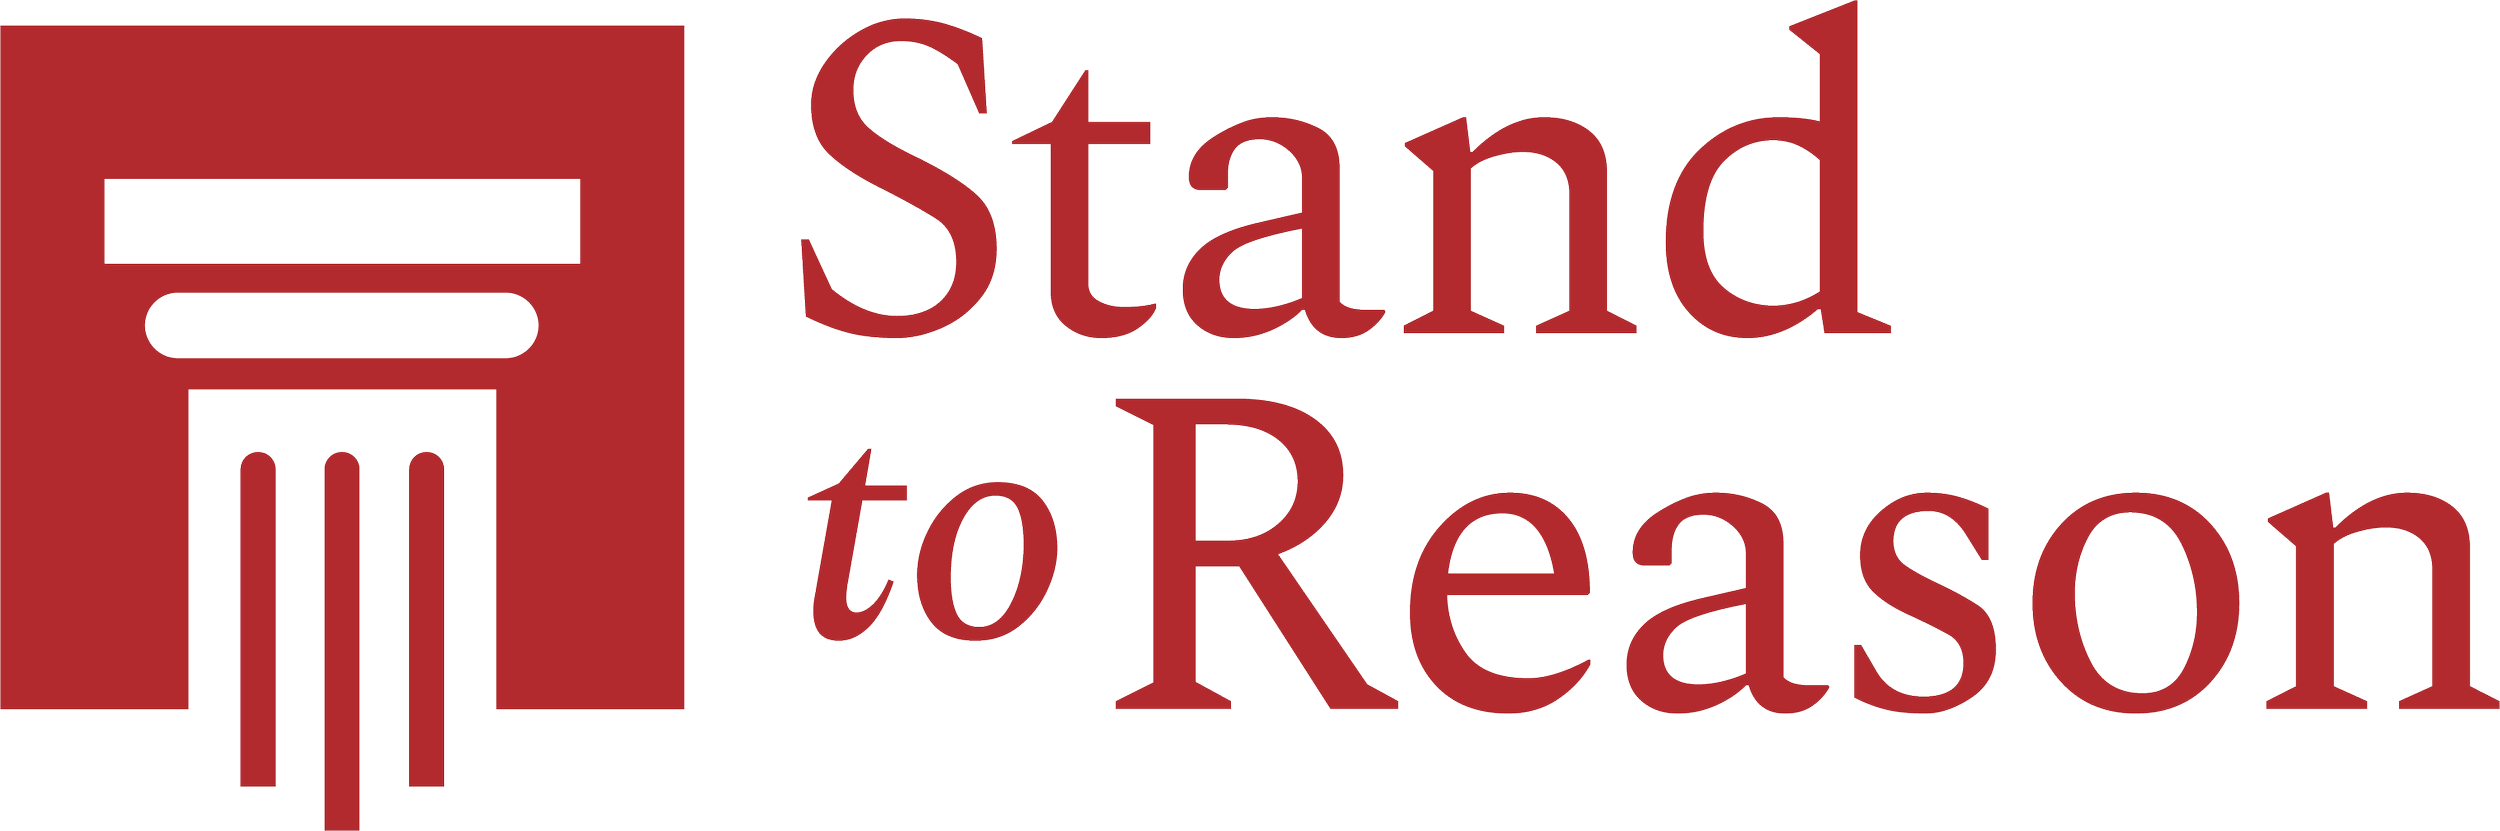 STR_red_logo_letttersize.png